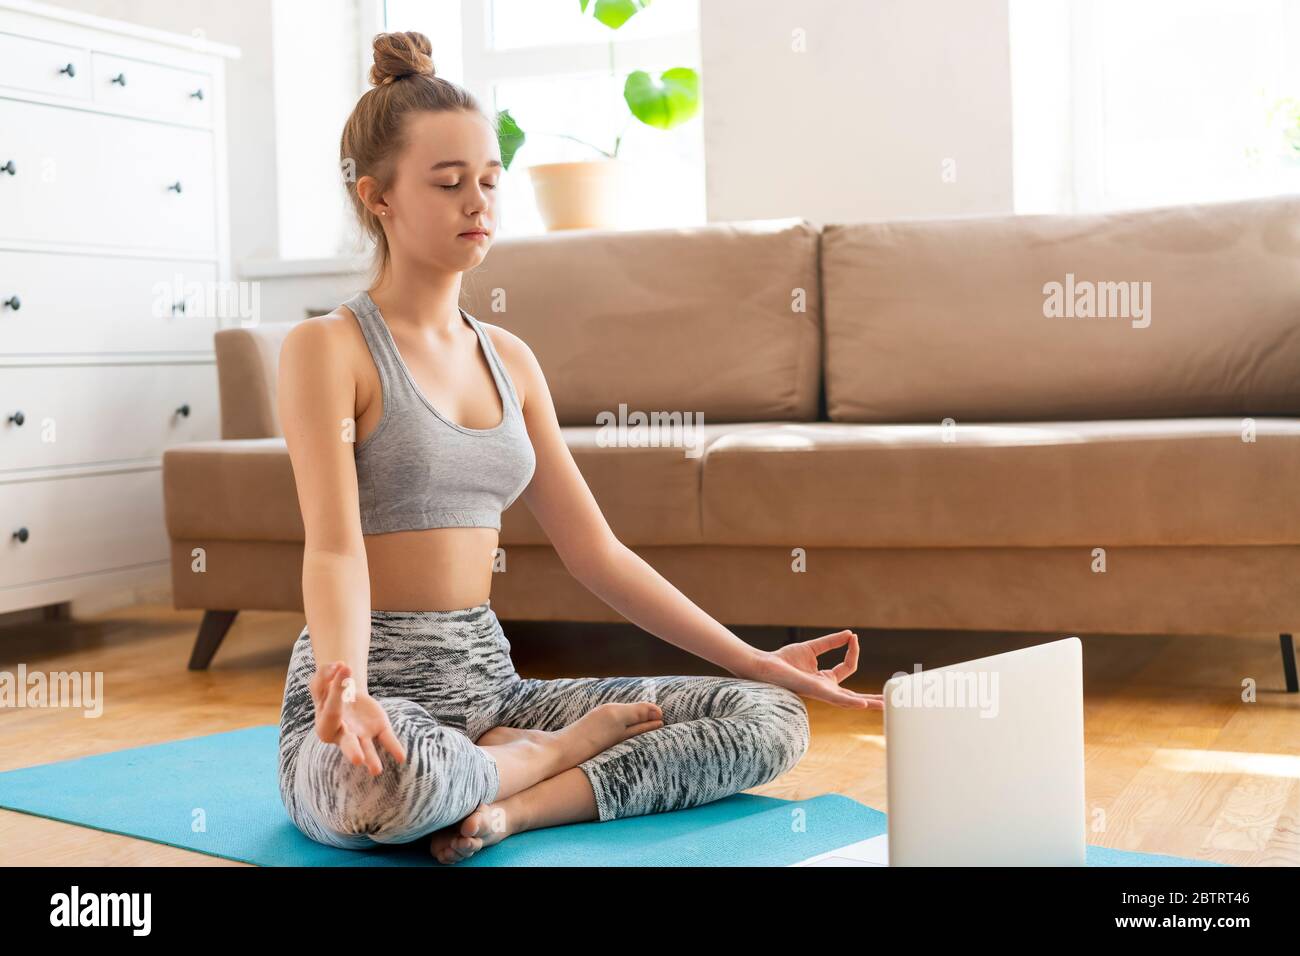 Junge attraktive Frauen tun Yoga-Übung zu Hause Yoga zu Hause in der Lotusposition, Ardha Padmasana Übung, halb Lotus Pose im Wohnzimmer. Sport mit BH und Hose. Gesundheitskonzept Stockfoto